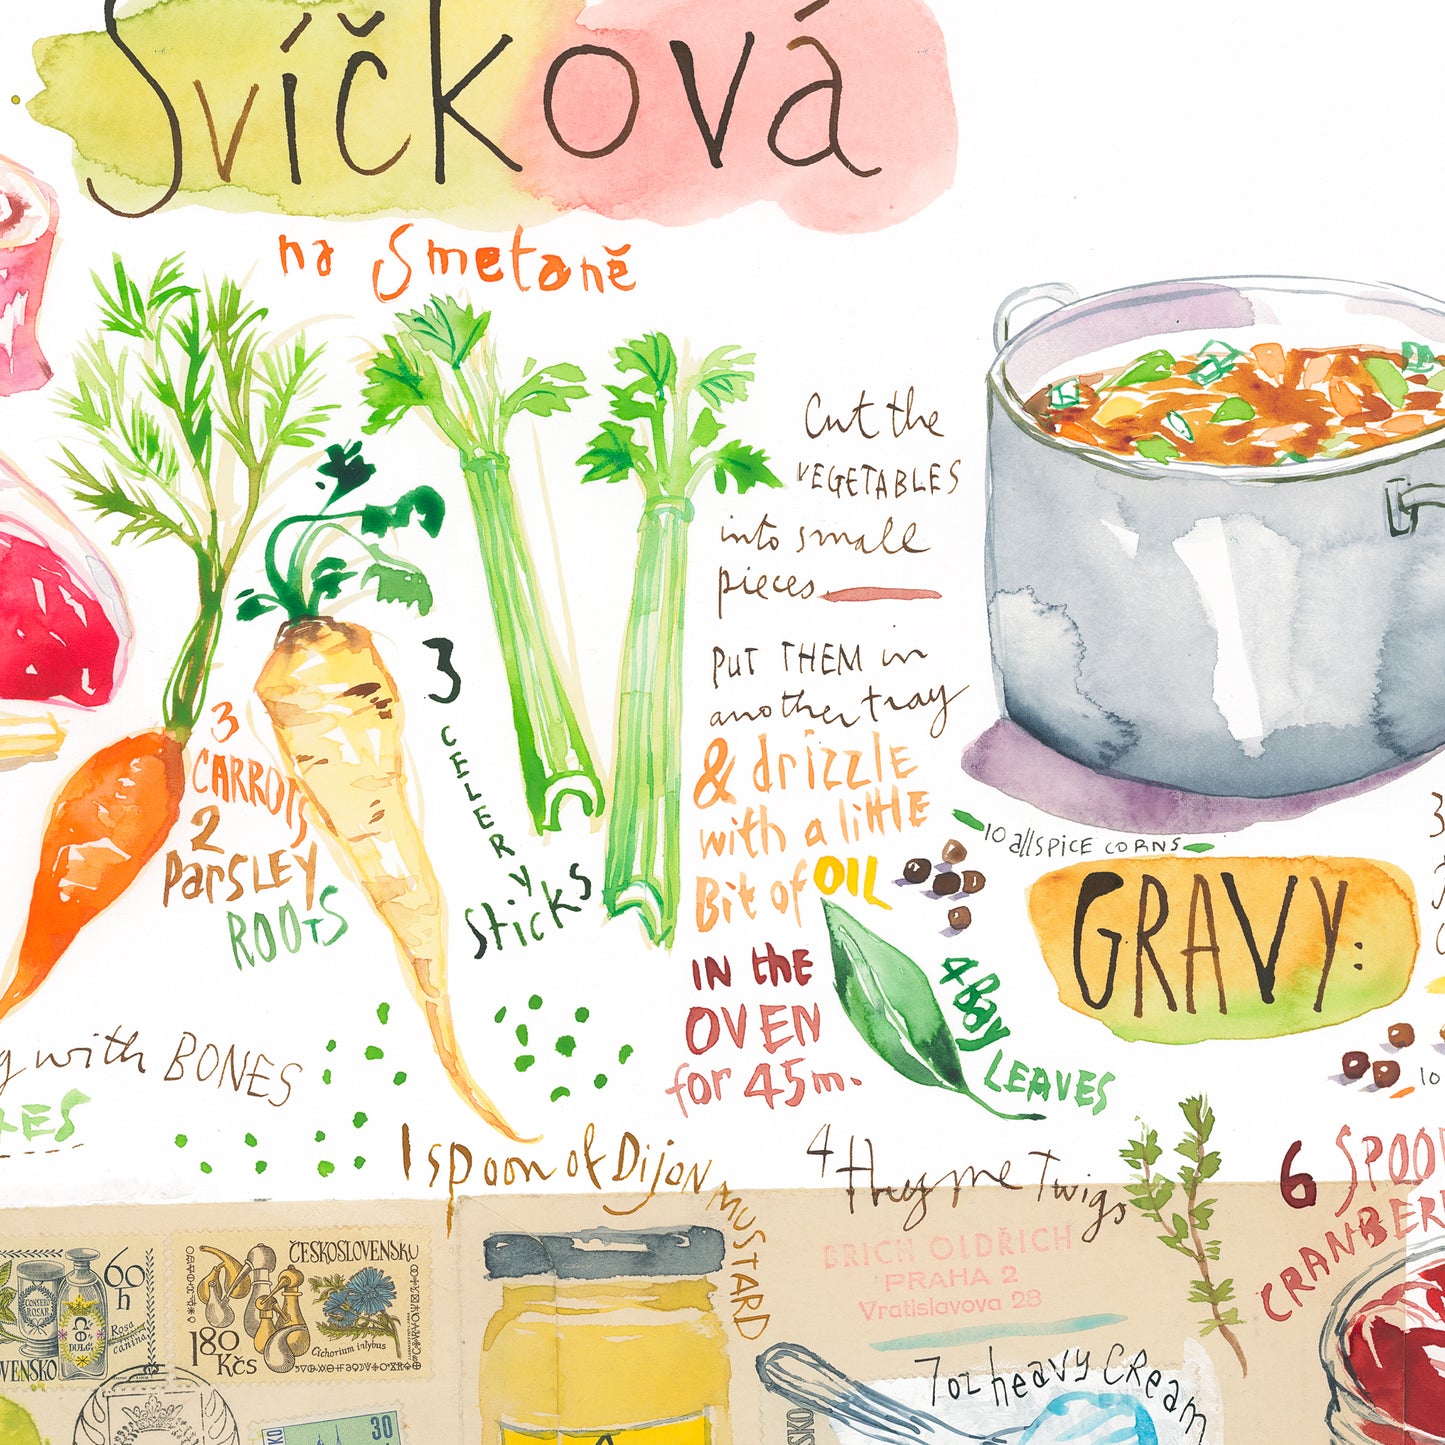 Czech Svíčková recipe